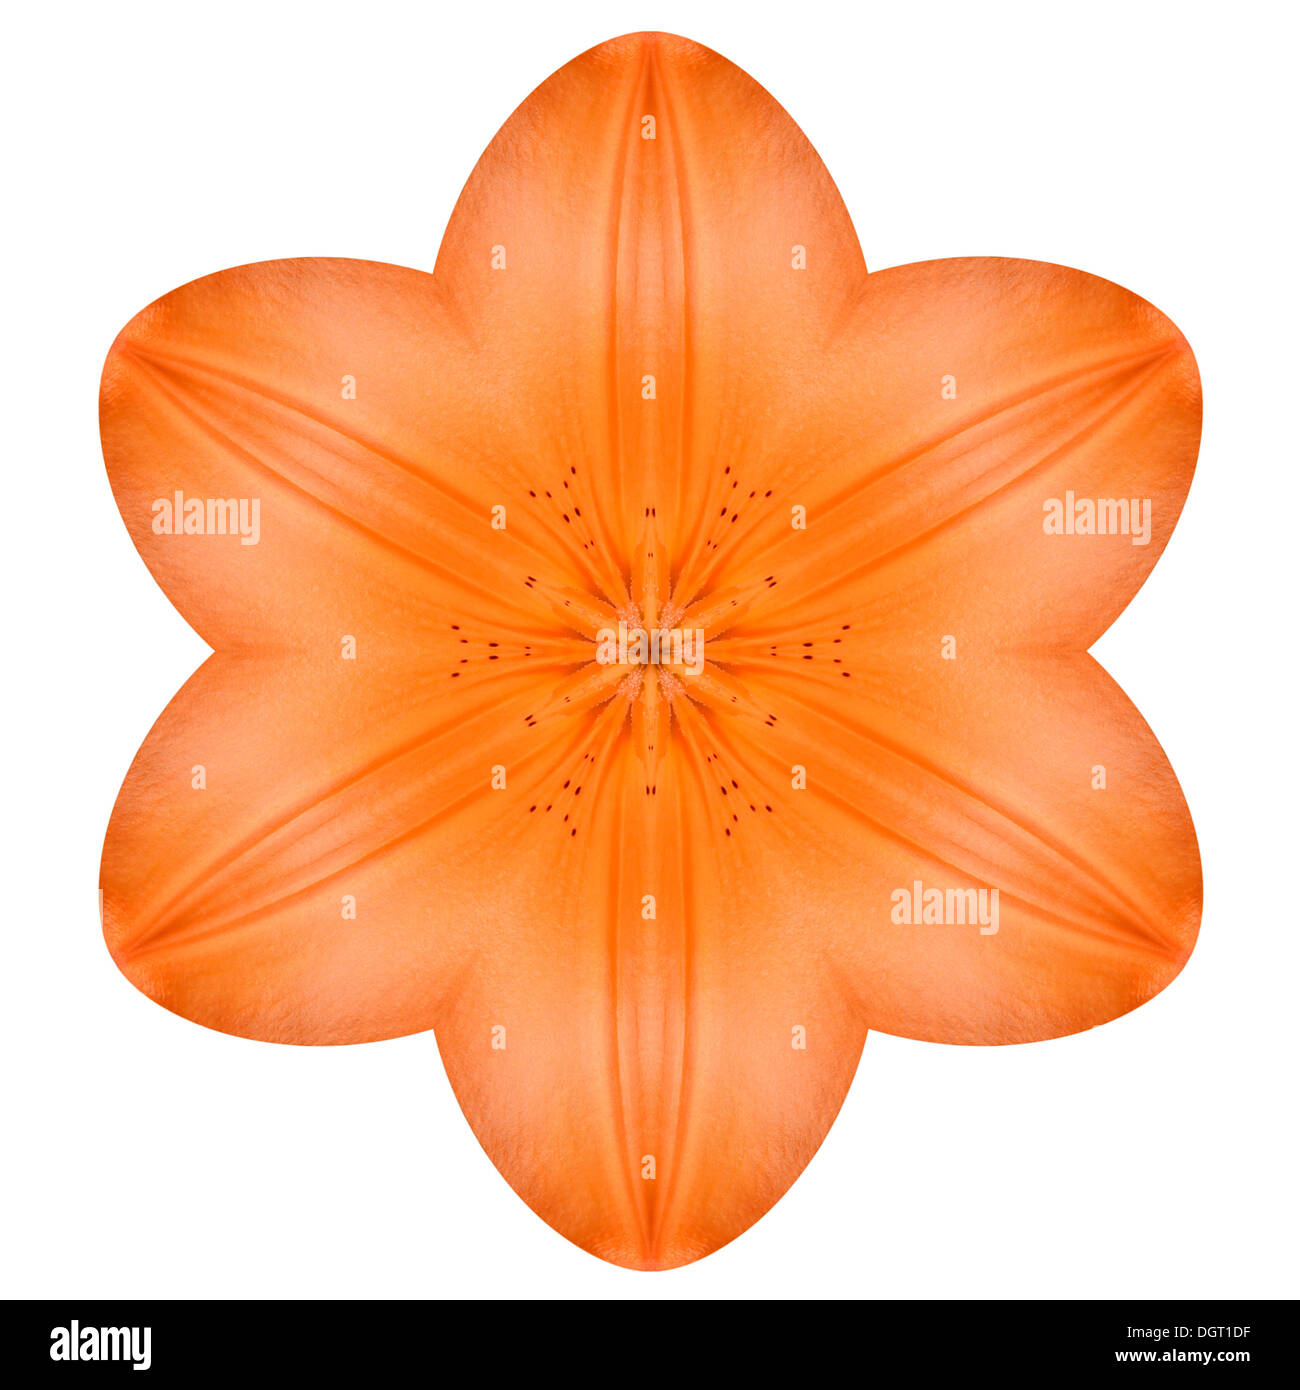 Orange Mandala Lilie Blume Kaleidoskop, Isolated on White Background Stockfoto